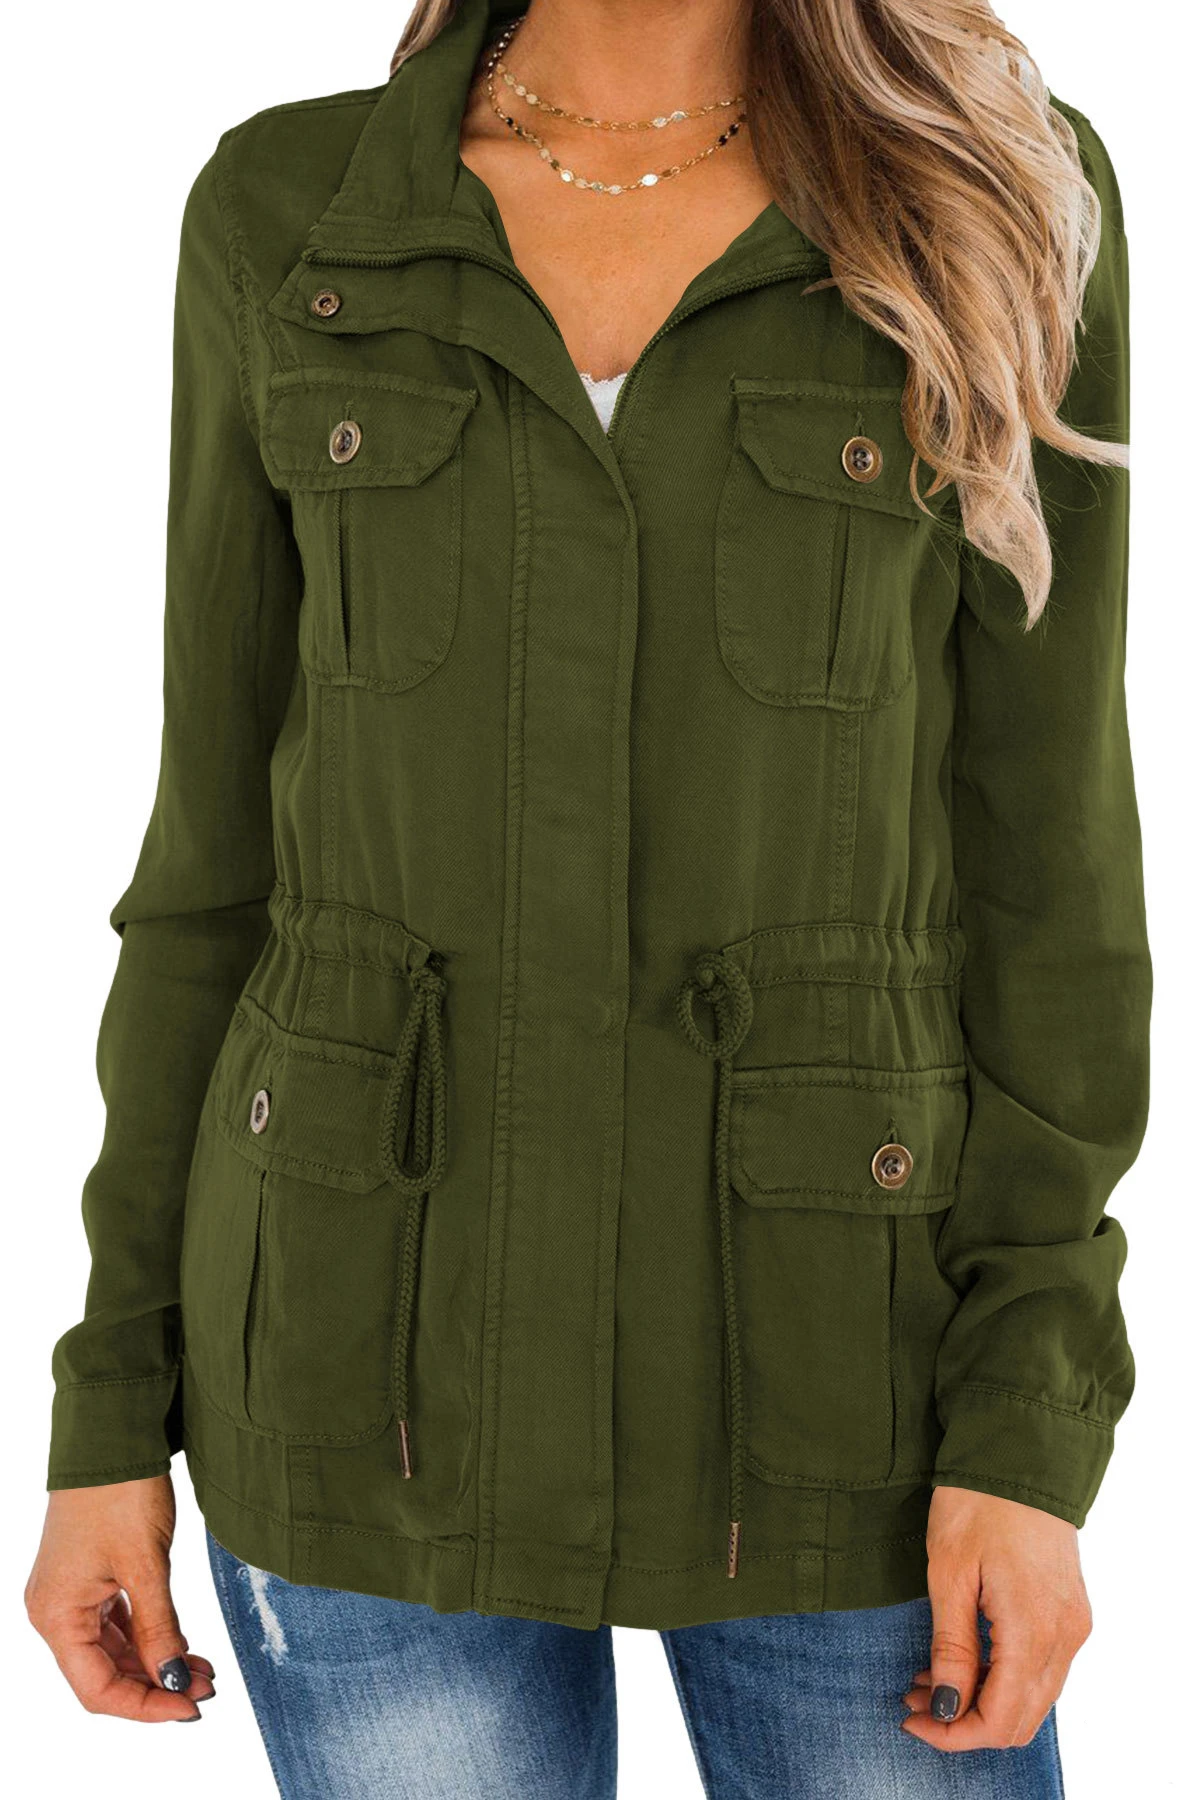 Chaqueta militar con botones para mujer, abrigo con cordón, informal,  estética Vintage, chaquetas con cremallera|chaquetas básicas| - AliExpress